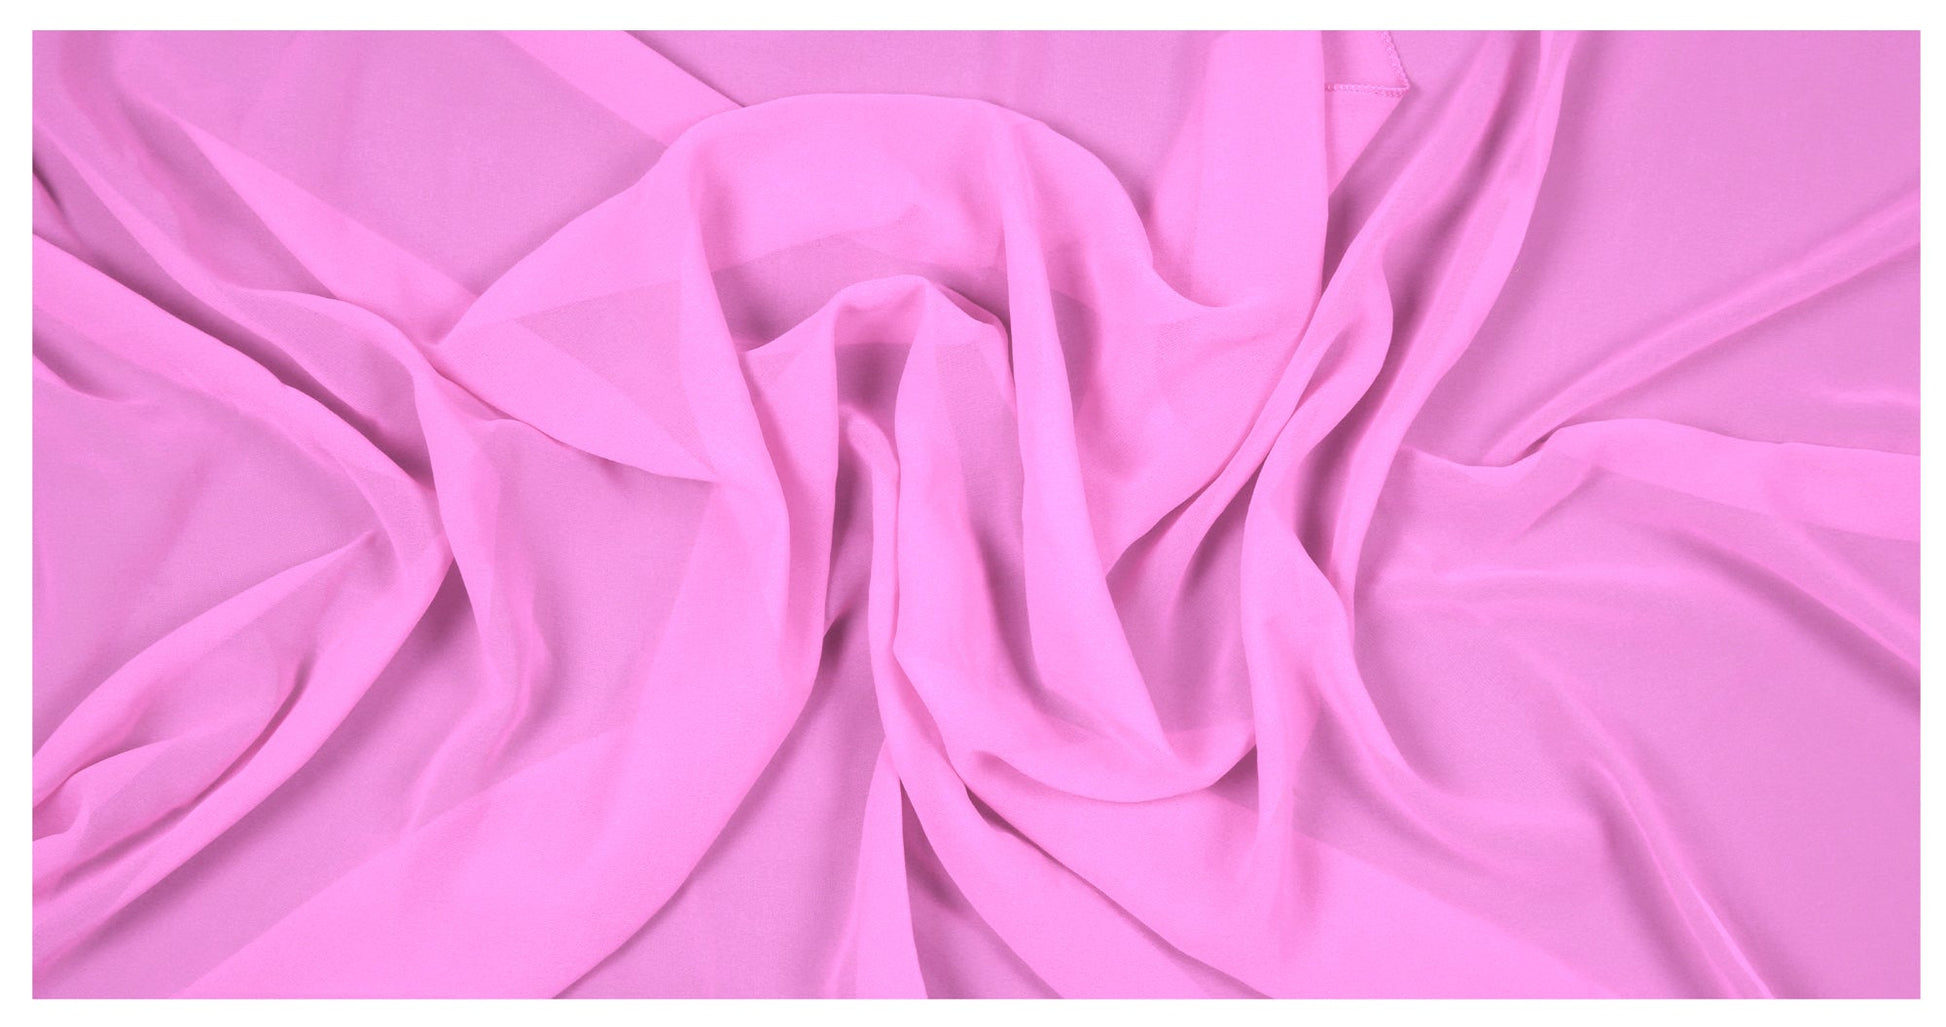 Bubblegum Pink,7ec35c4c-8865-4341-8657-81eaab4ac2b9